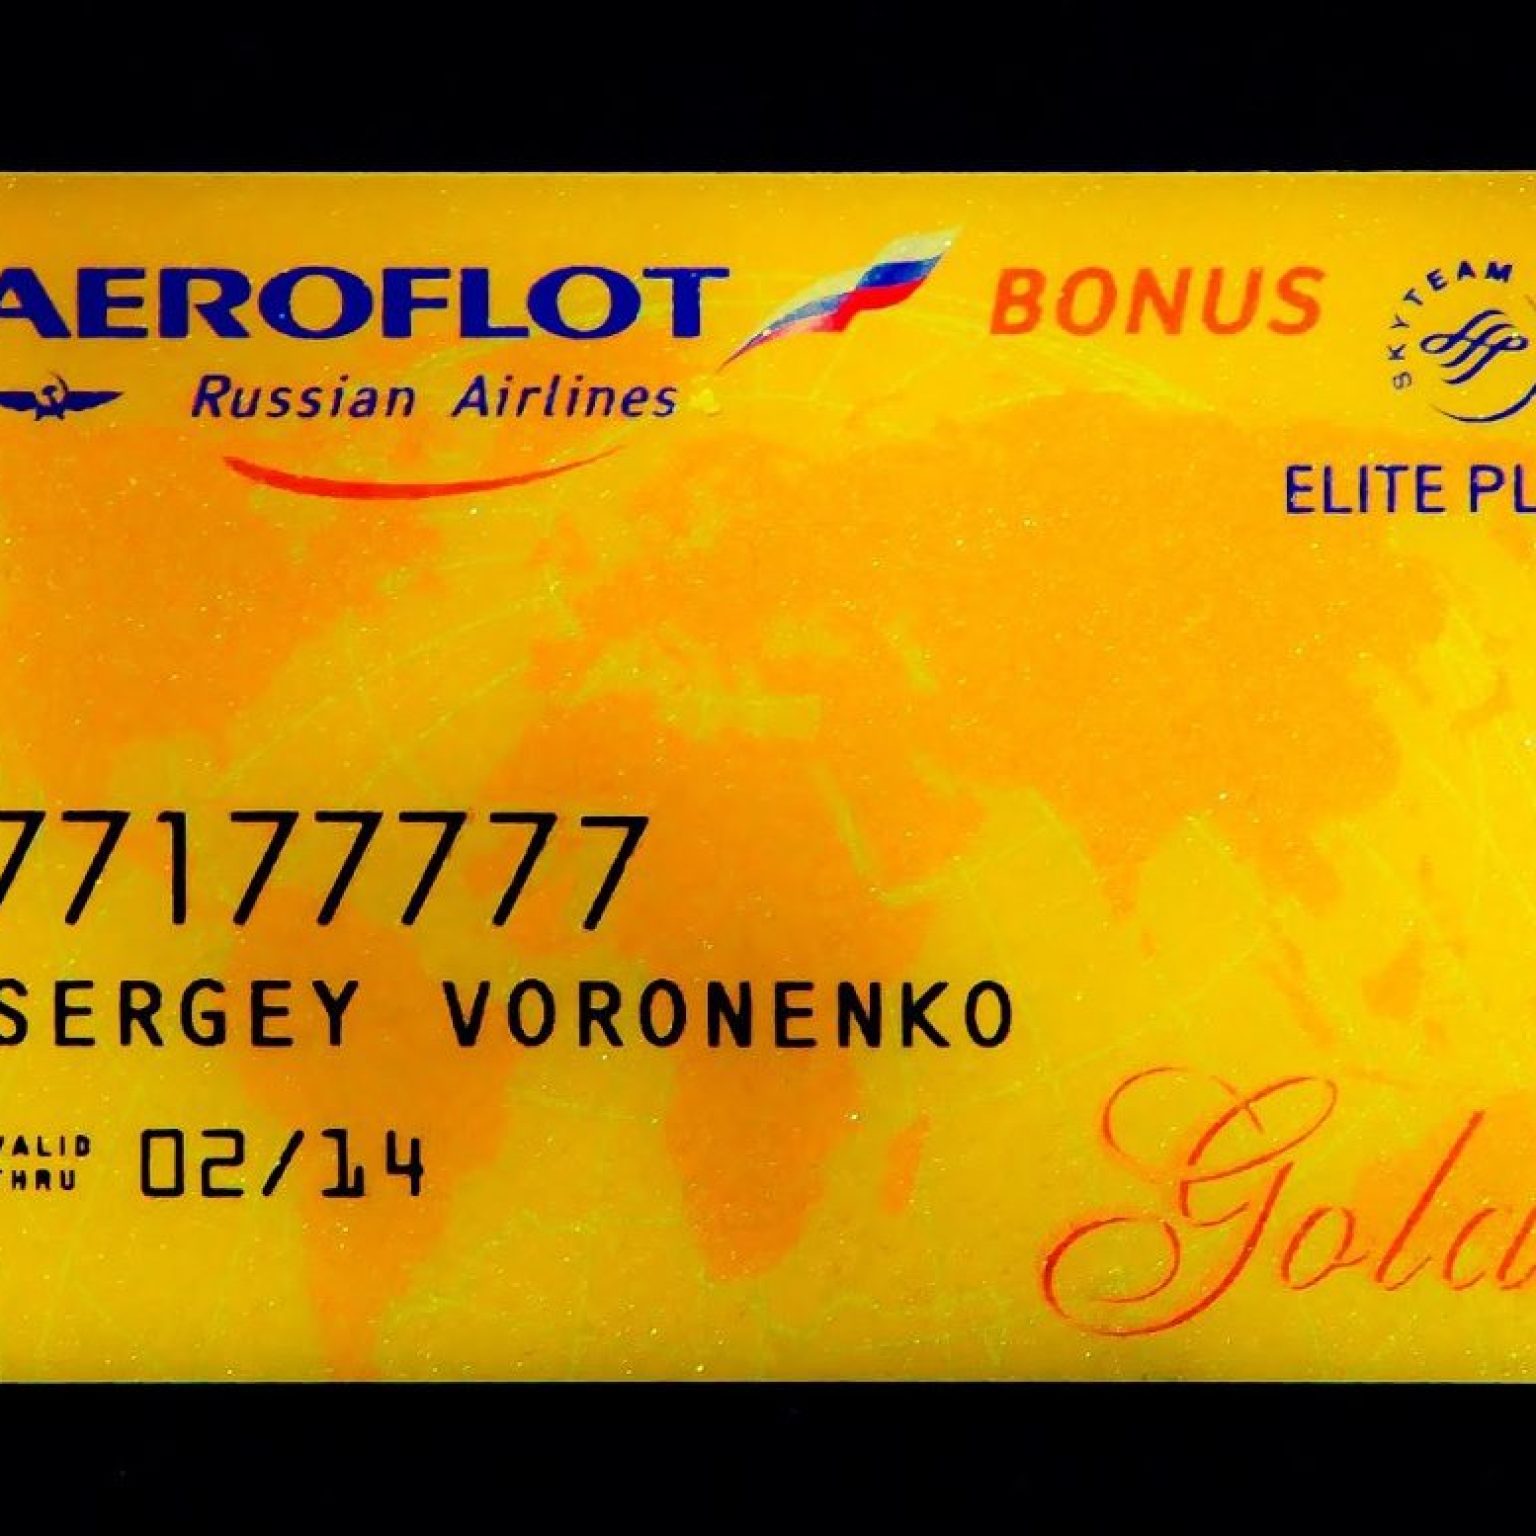 Какие привилегии дает золотая карта Аэрофлота (аэрофлот бонус, аэрофлот голд): как получить и сколько стоит